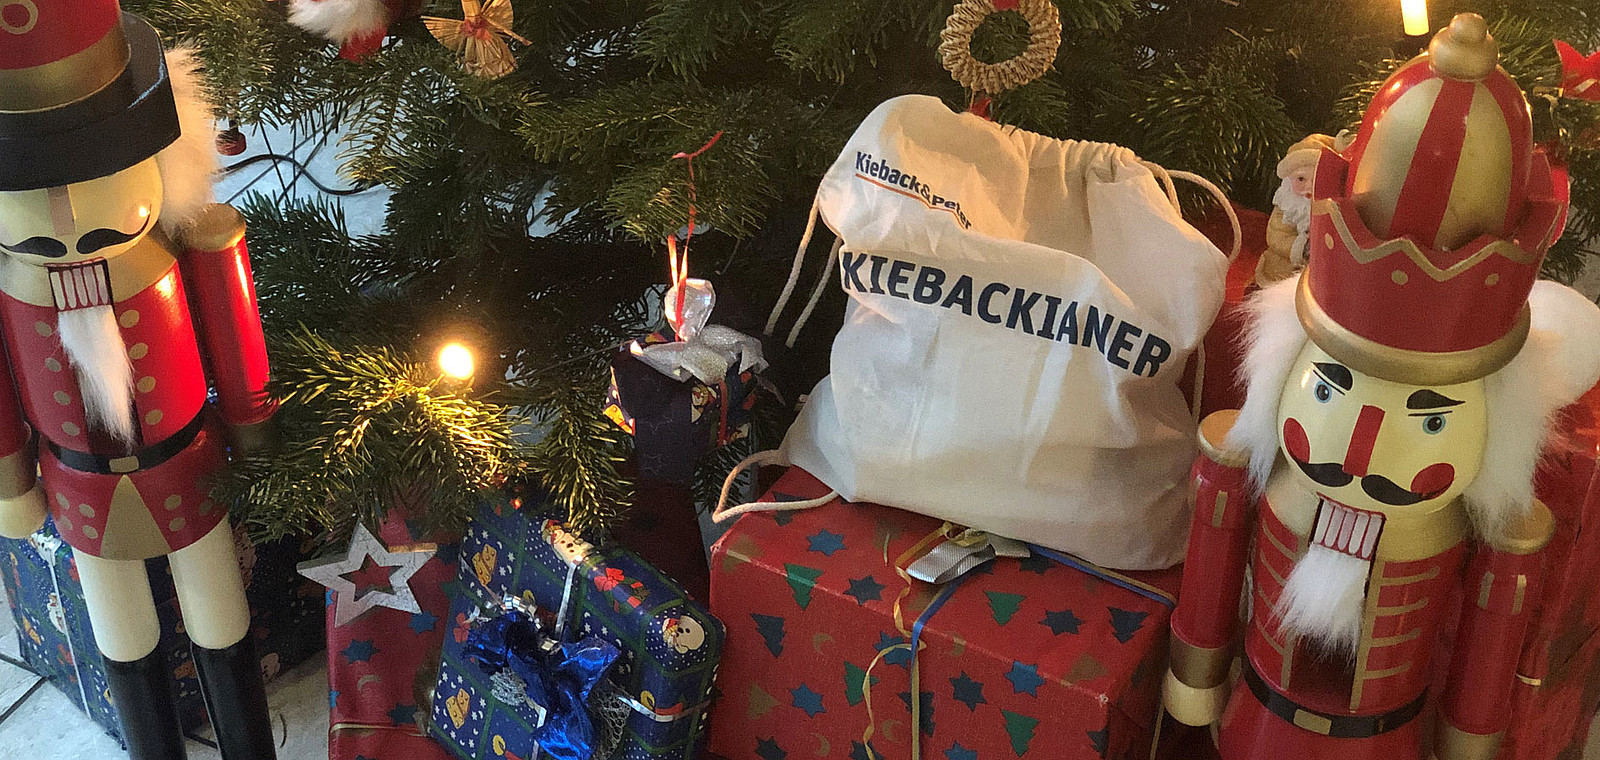 Der Kieback&Peter-Beutel inmitten von Weihnachtsgeschenken.